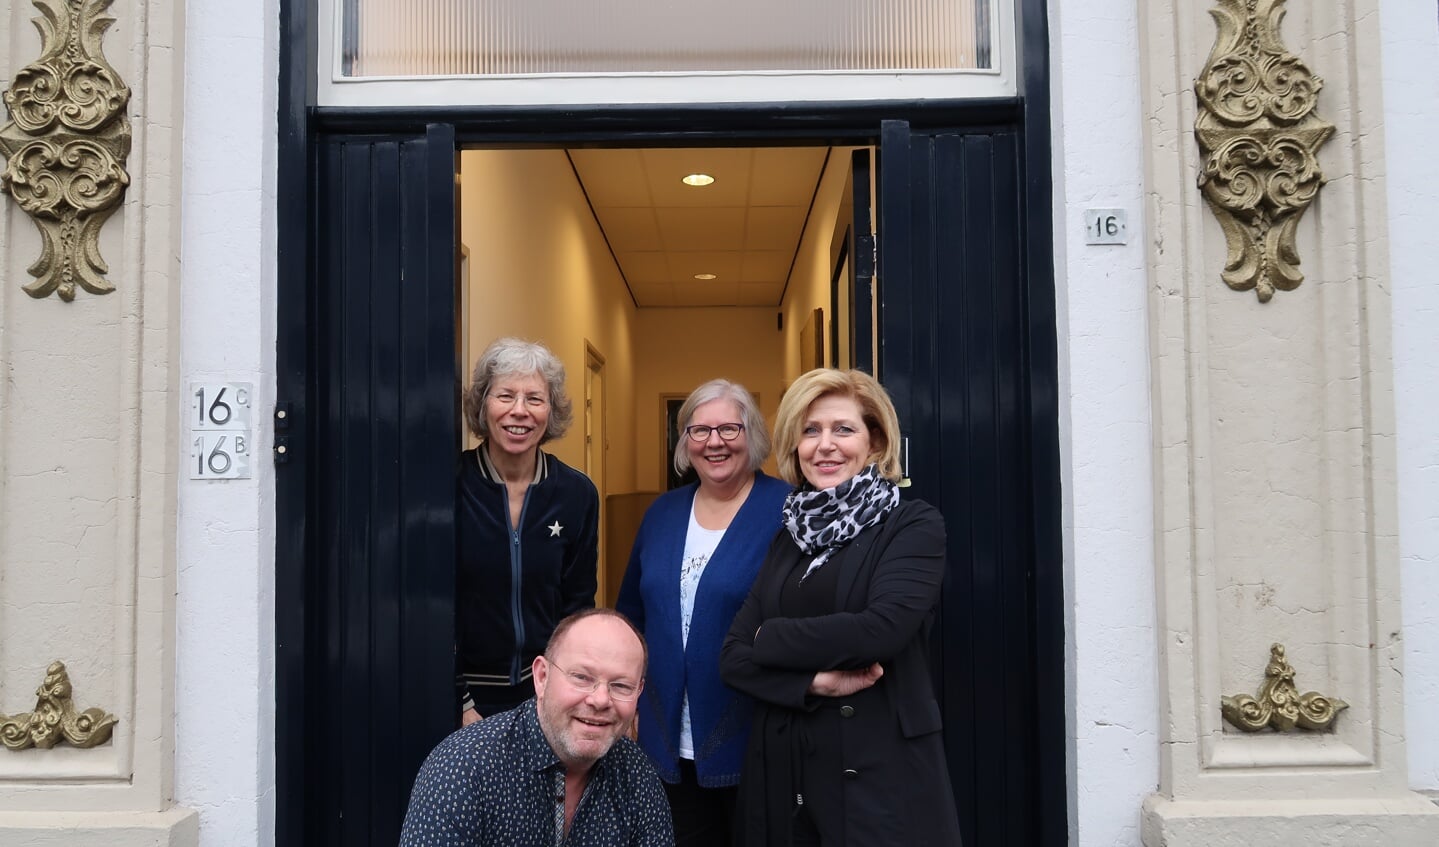 Janette Eyck, Boudewijn Wolbert, Joke Rottier en Jacqueline Dieks zijn vanaf begin volgend jaar samen actief vanuit ’t Spalhuus in de Hengelose Spalstraat. Foto: Luuk Stam